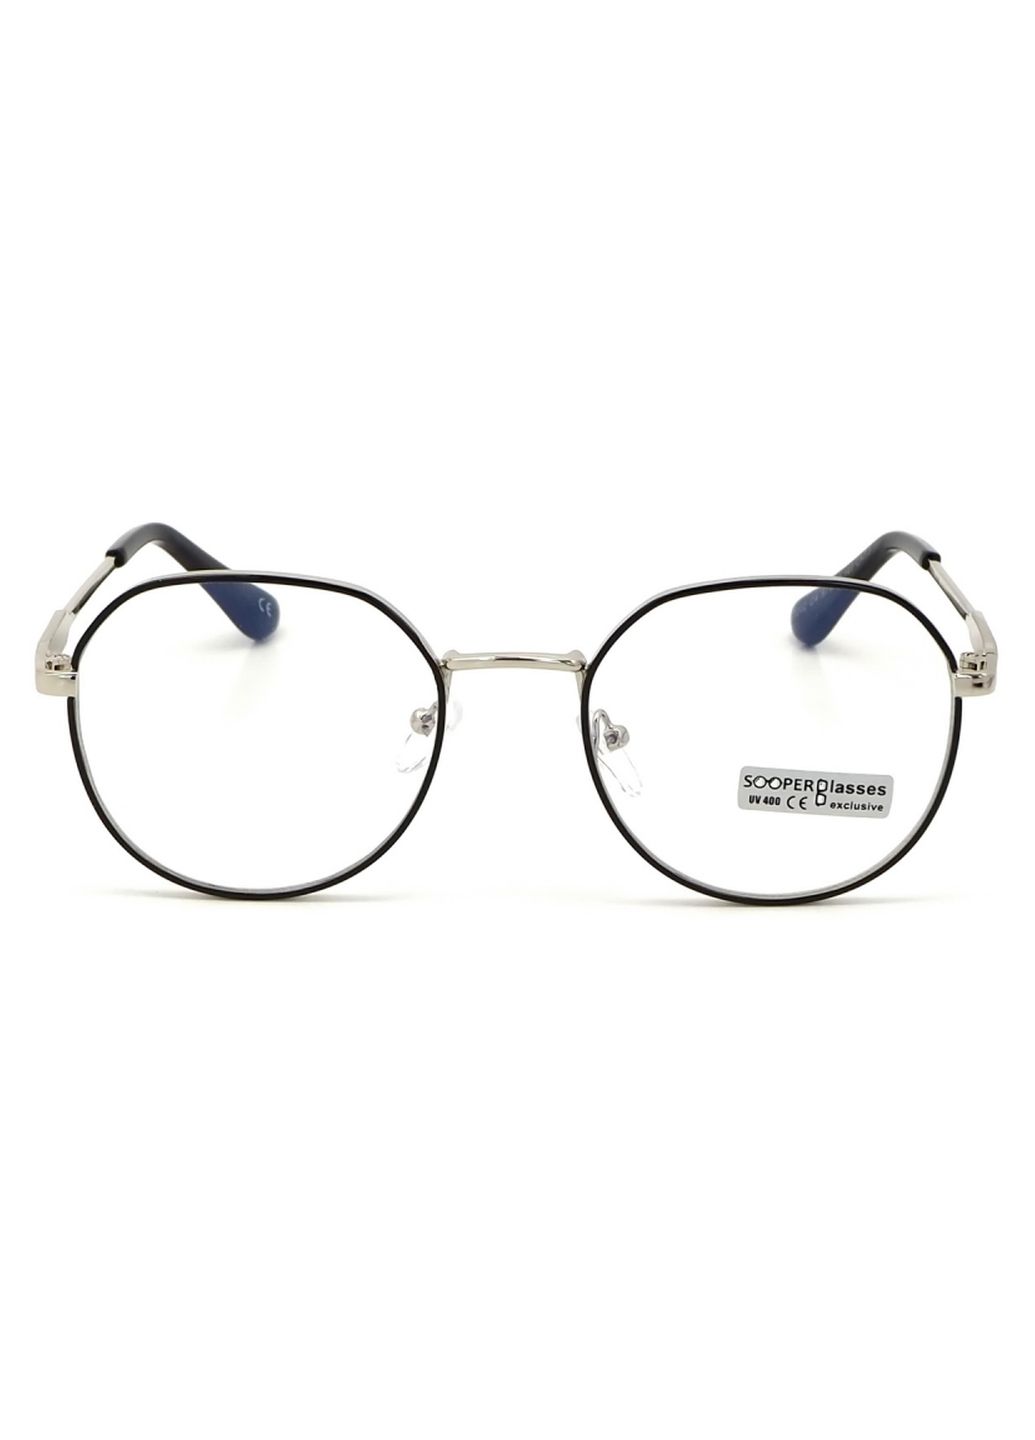 Купить Очки для работы за компьютером Cooper Glasses в серебристой оправе 124008 в интернет-магазине